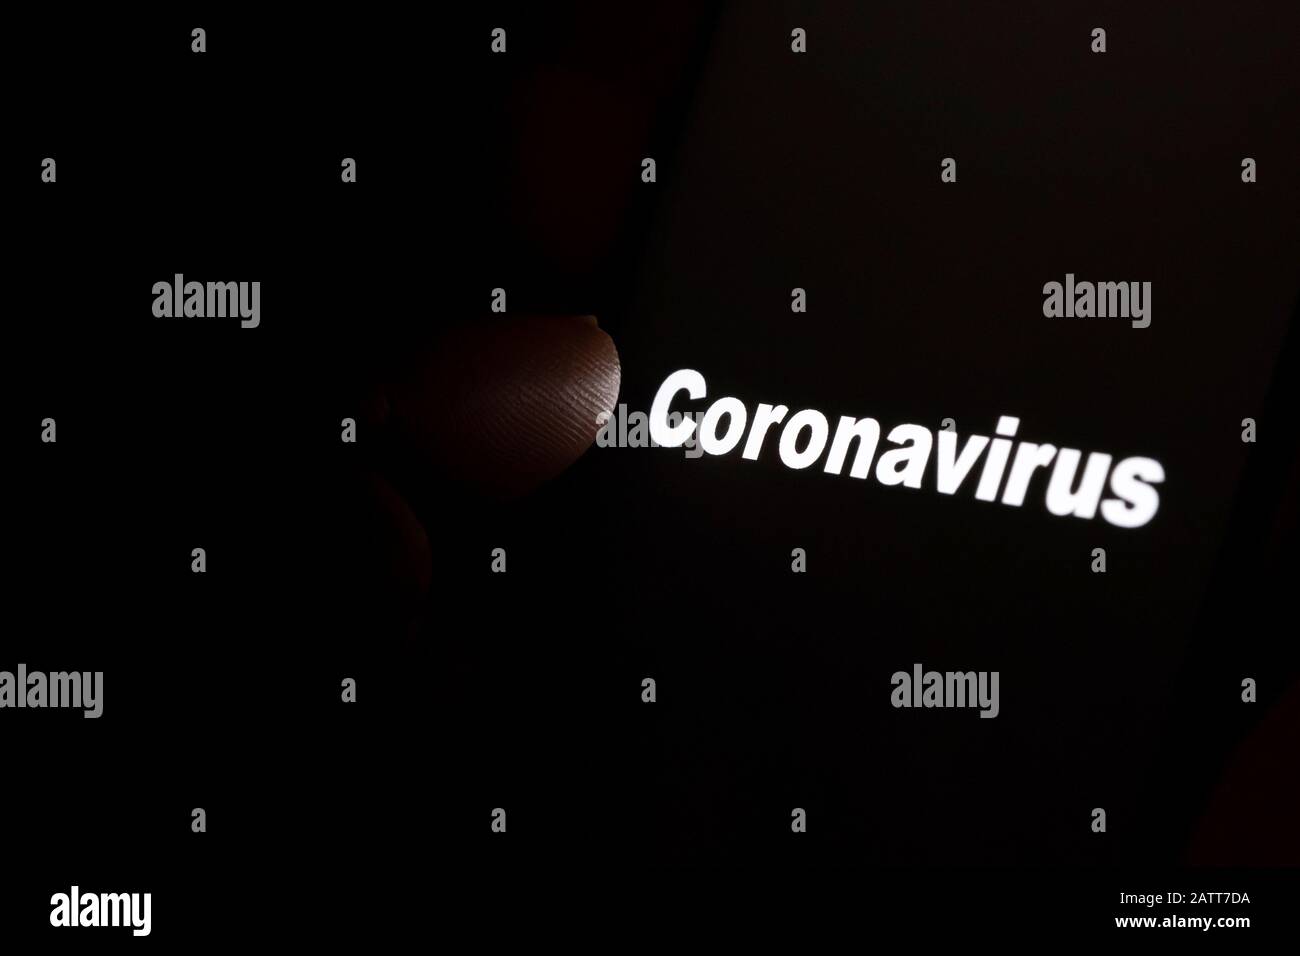 Palabra "coronavirus" brillando en una pantalla negra y apuntando hacia ella. Concepto de luto y estar en un foco. Foto de stock